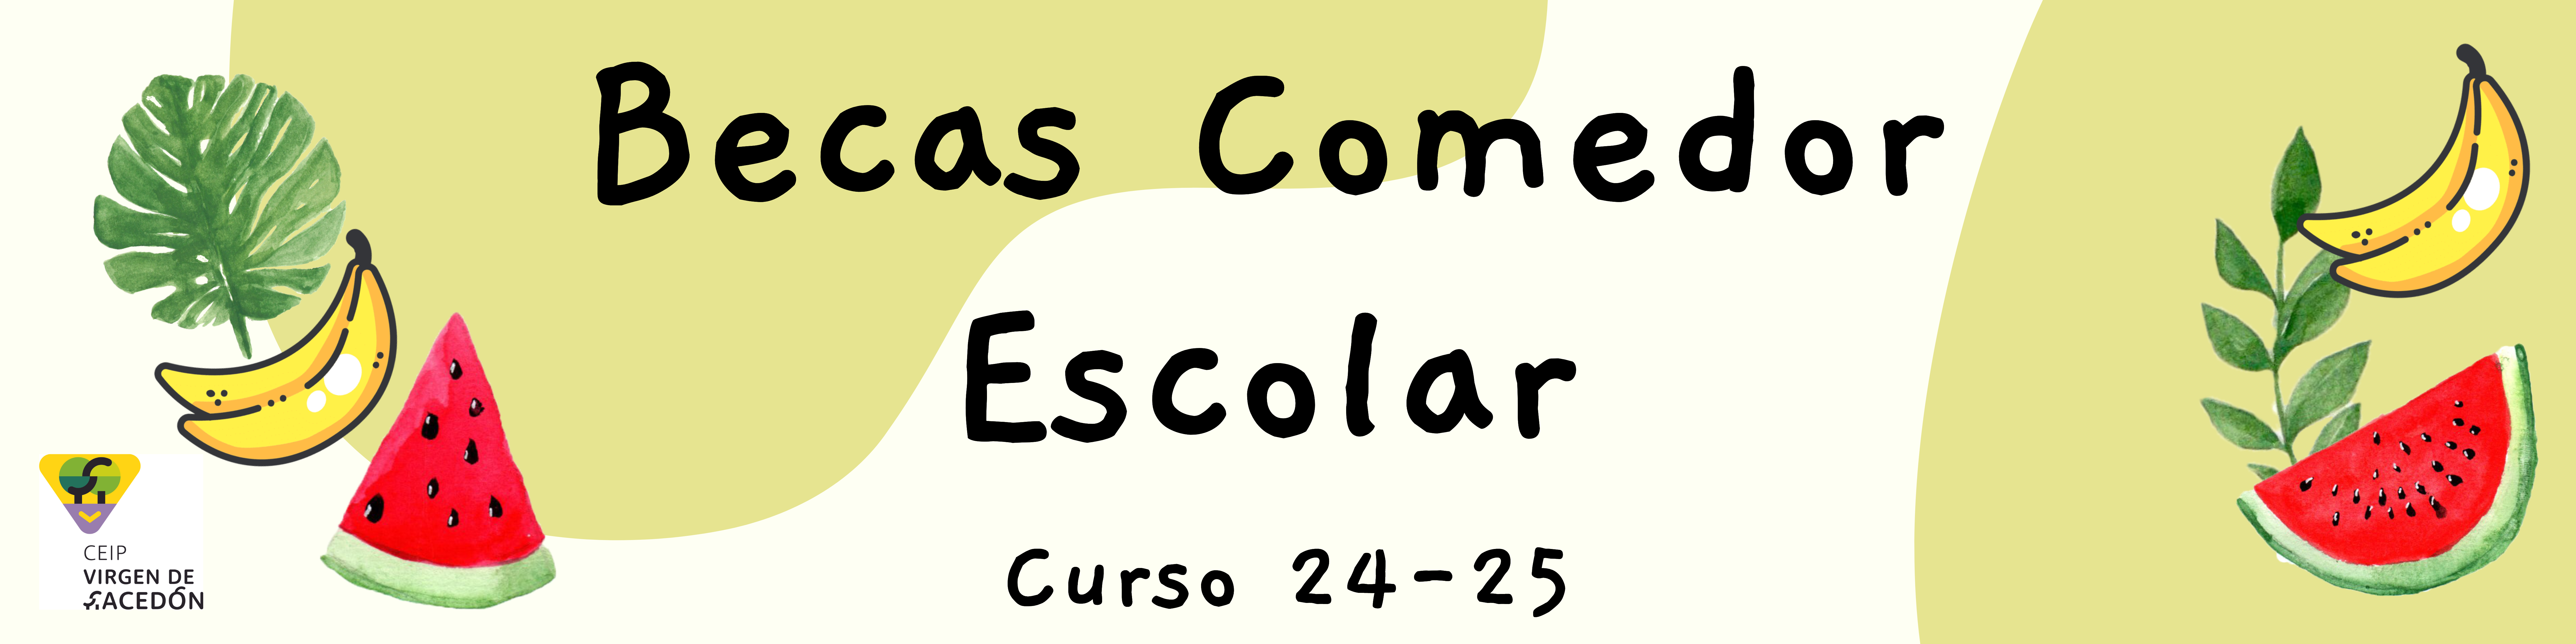 Banner Becas Comedor24-25